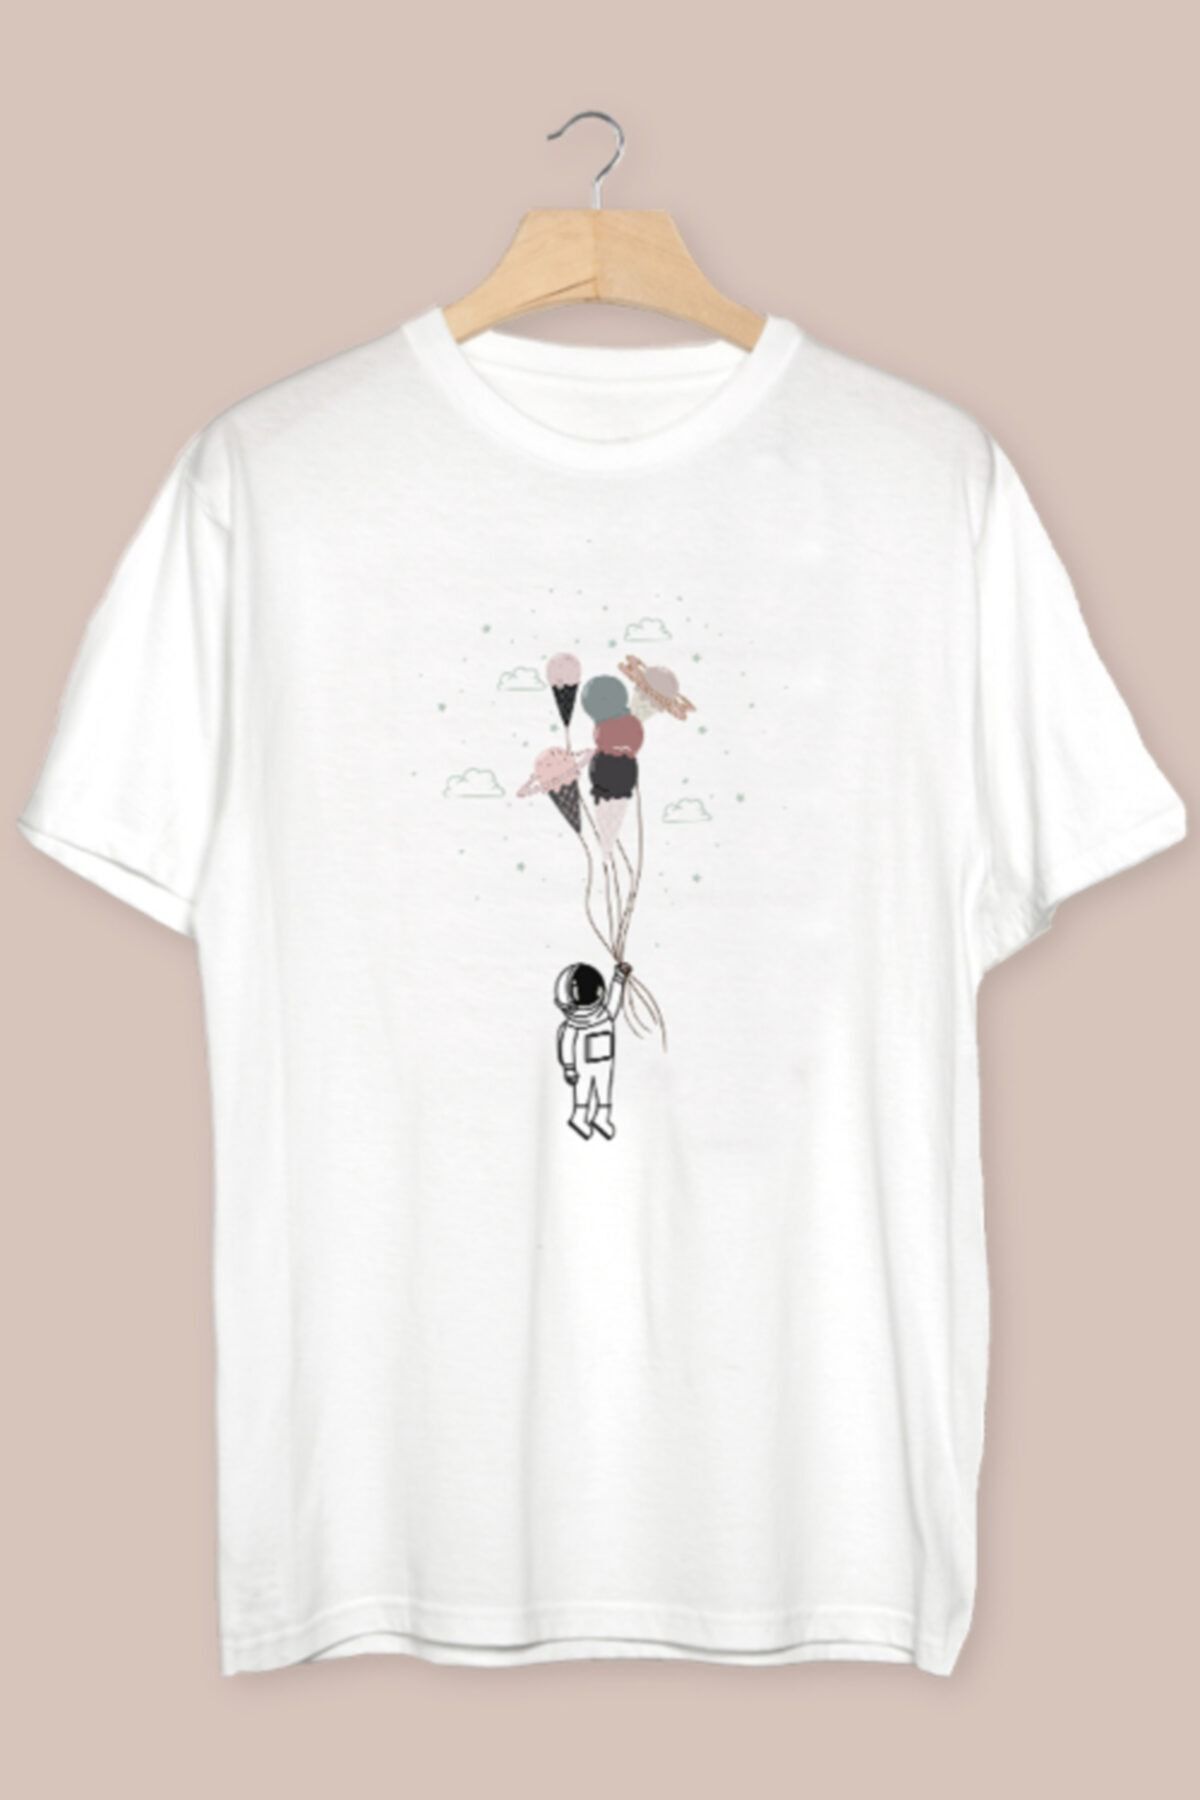 TÜşört Uzay Balonları - Astronot Tasarımlı Pamuklu Tshirt